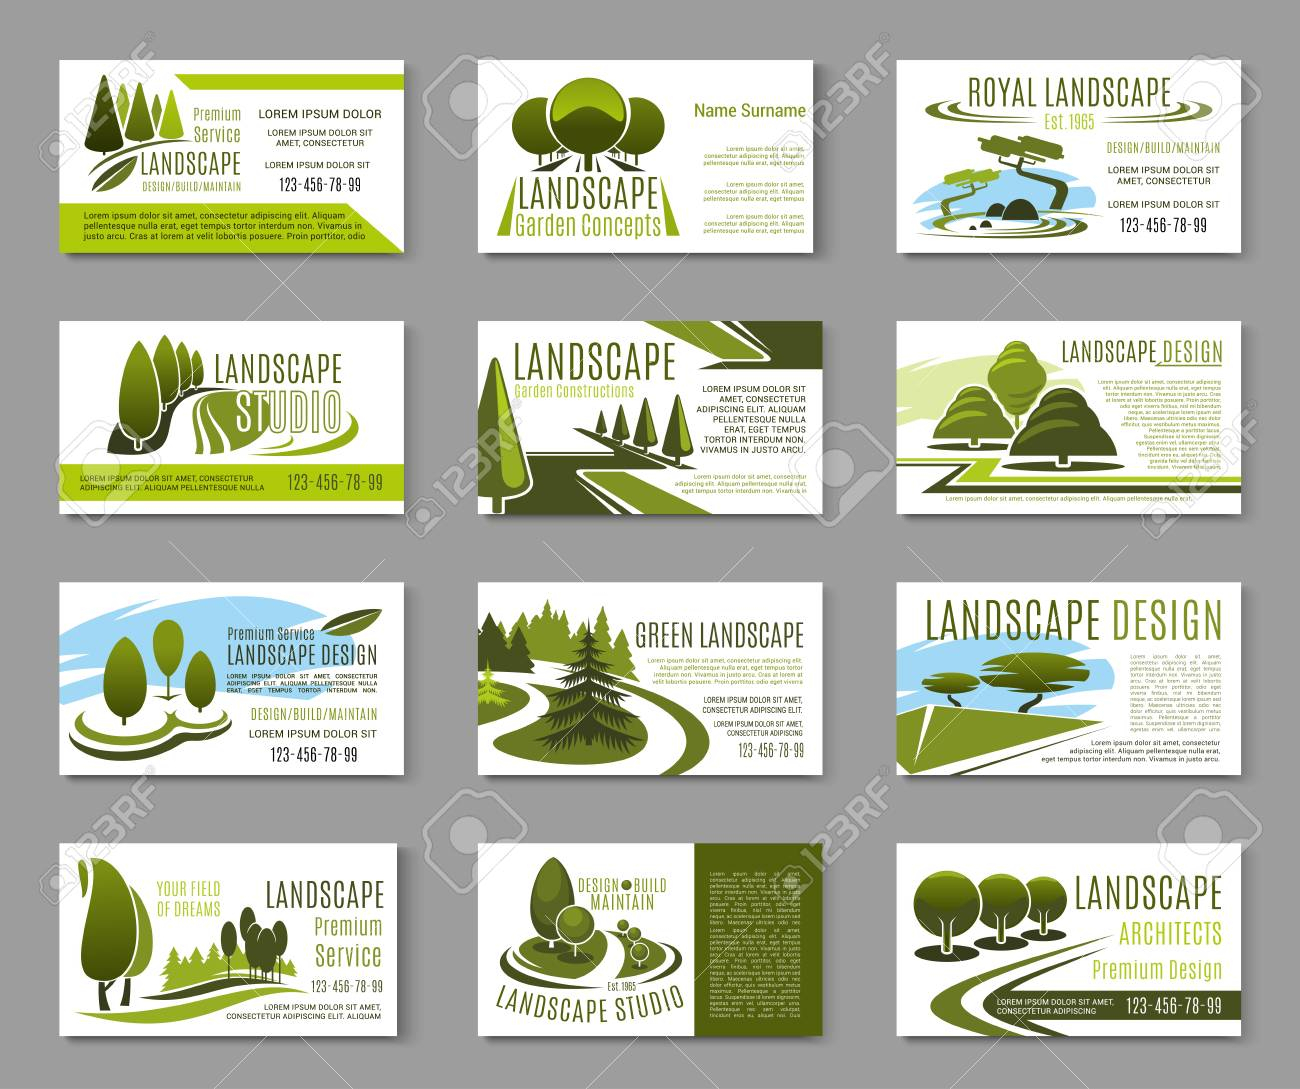 Landscape Design Studio Business Card Template Pertaining To Landscaping Business Card Template